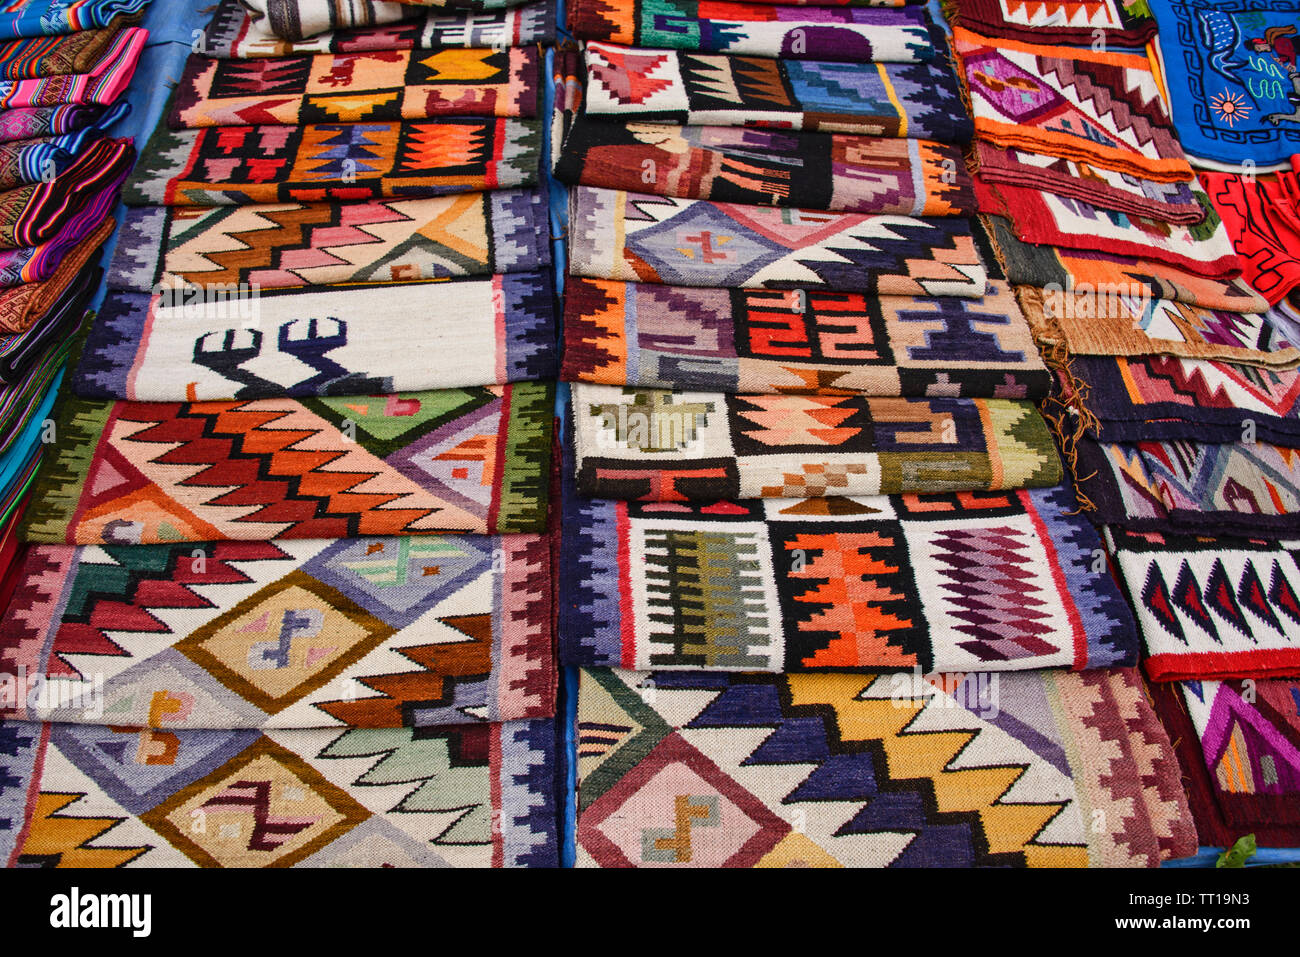 Yampara tradizionali tessili per la vendita, Tarabuco, Bolivia Foto Stock